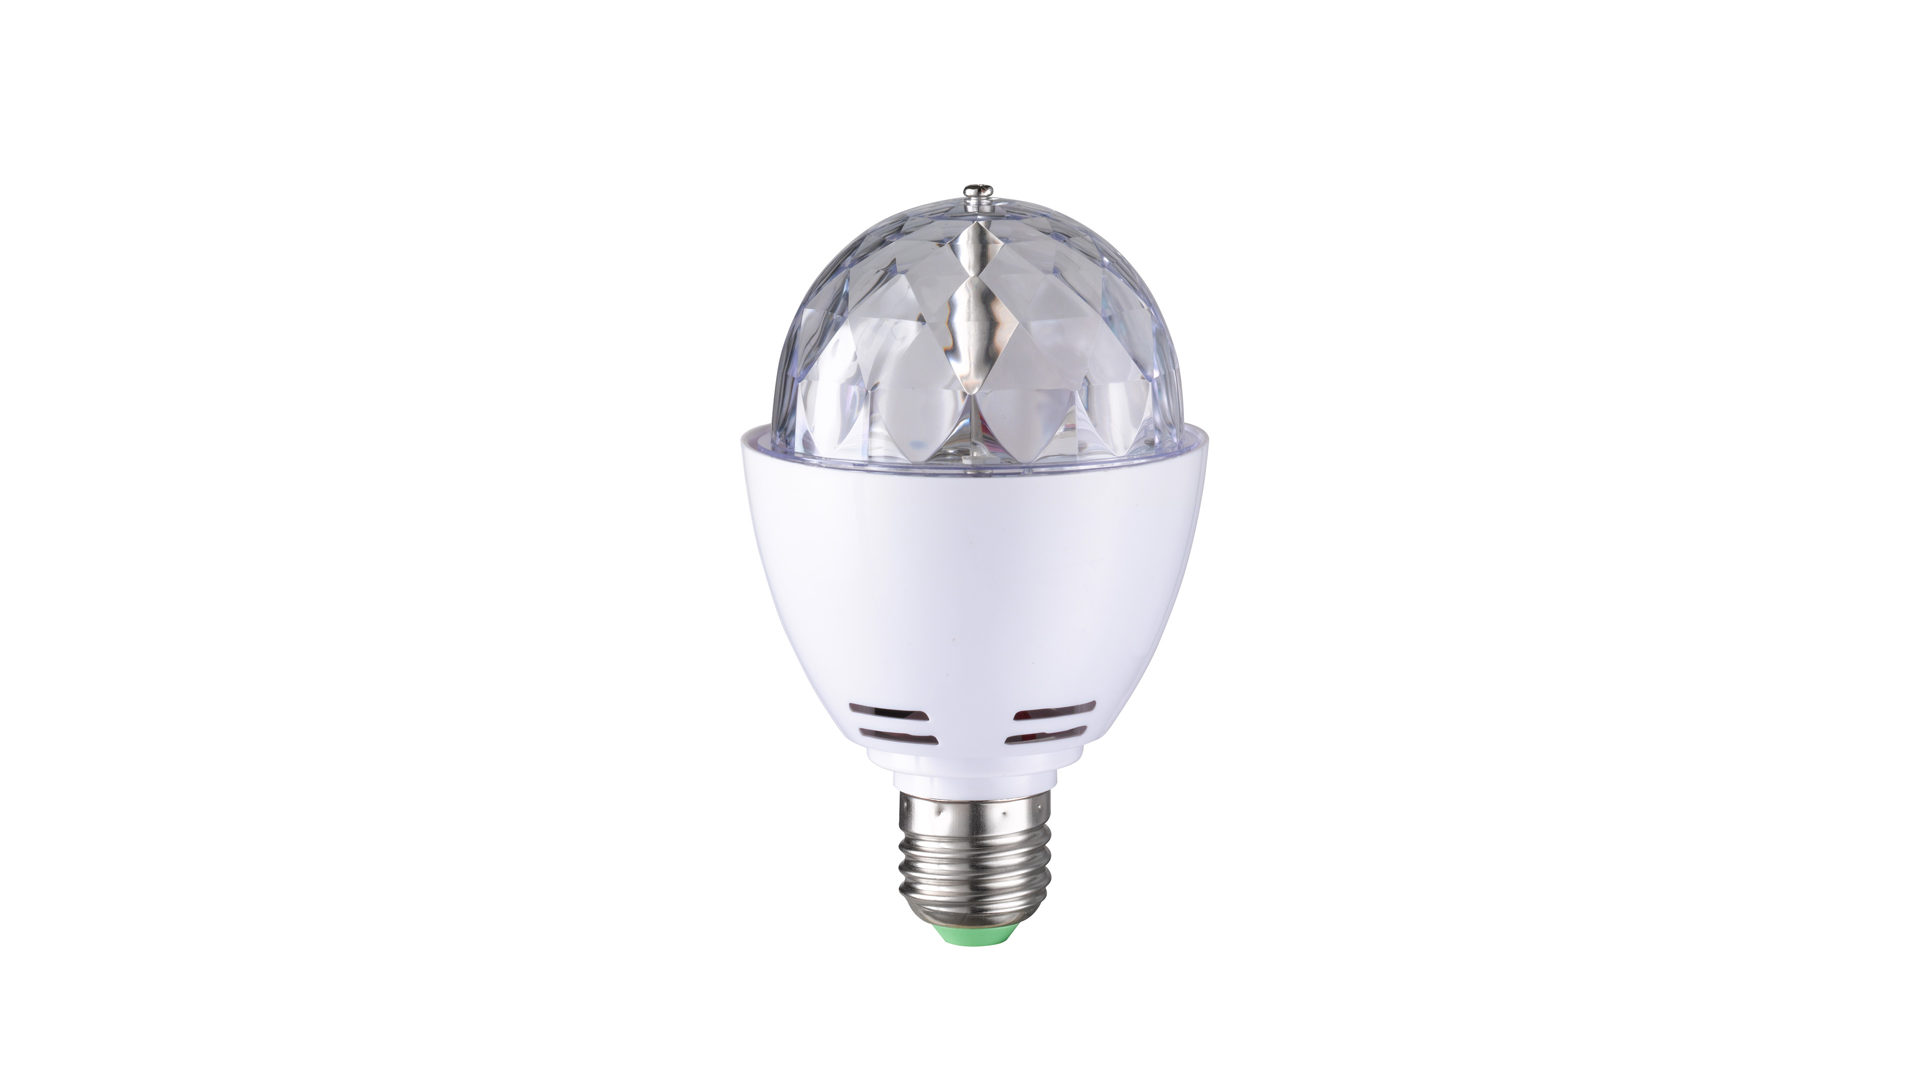 Leuchtmittel Wofi aus Kunststoff in Weiß LED Leuchtmittel Deko mit Farbwechseleffekt Weiß & RGB LED - Durchmesser ca. 8 cm